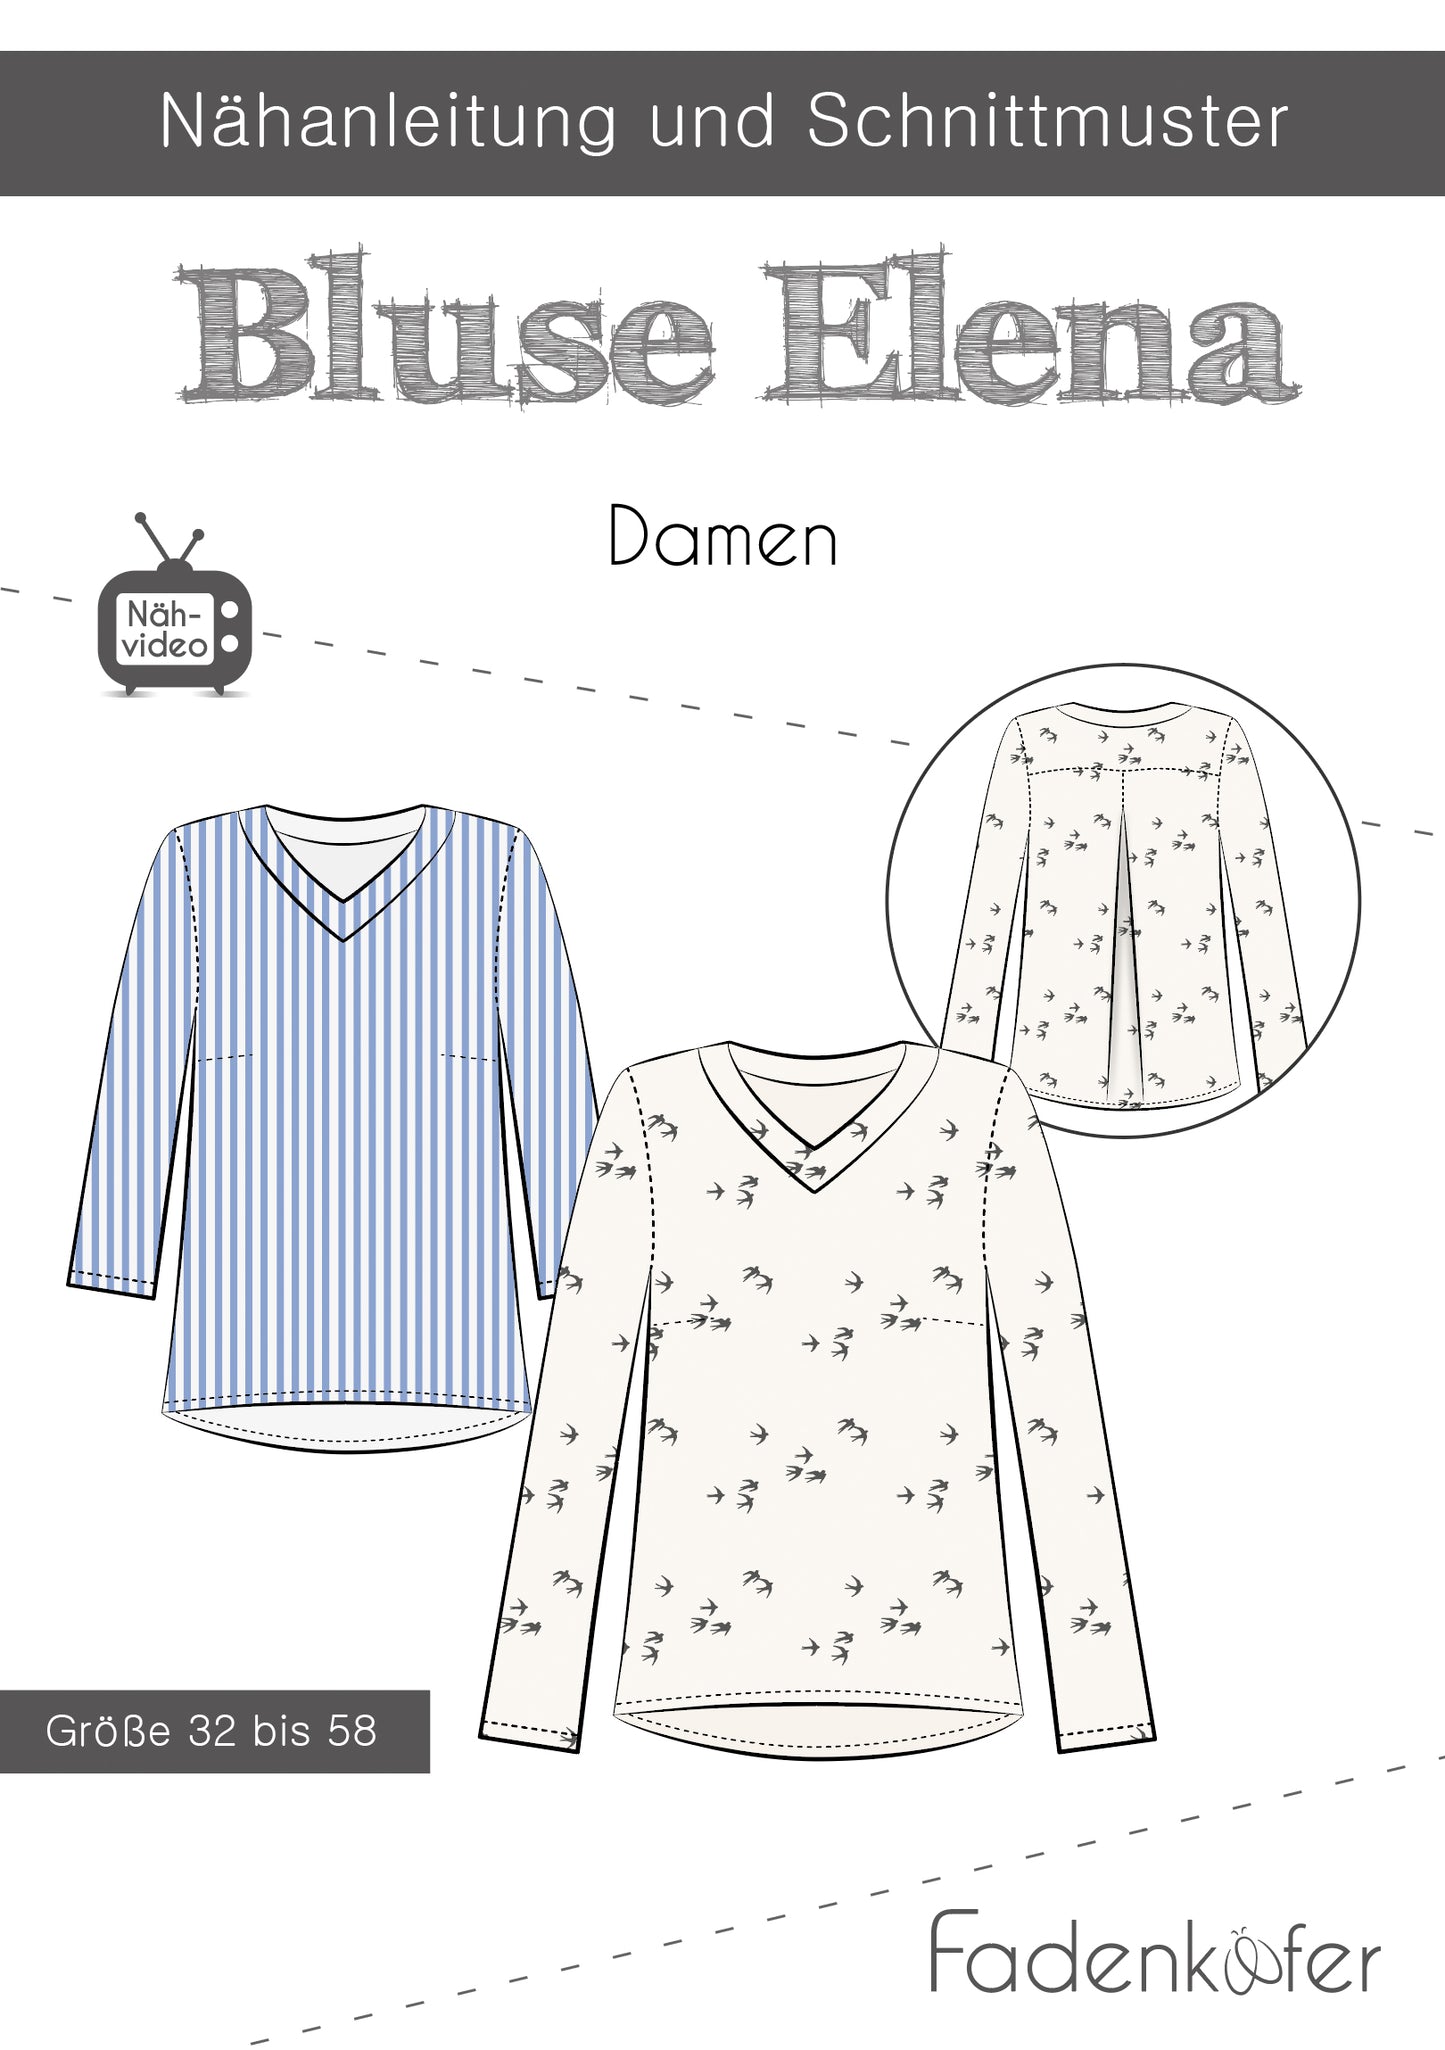 Bluse"Elena" für Damen von Fadenkäfer